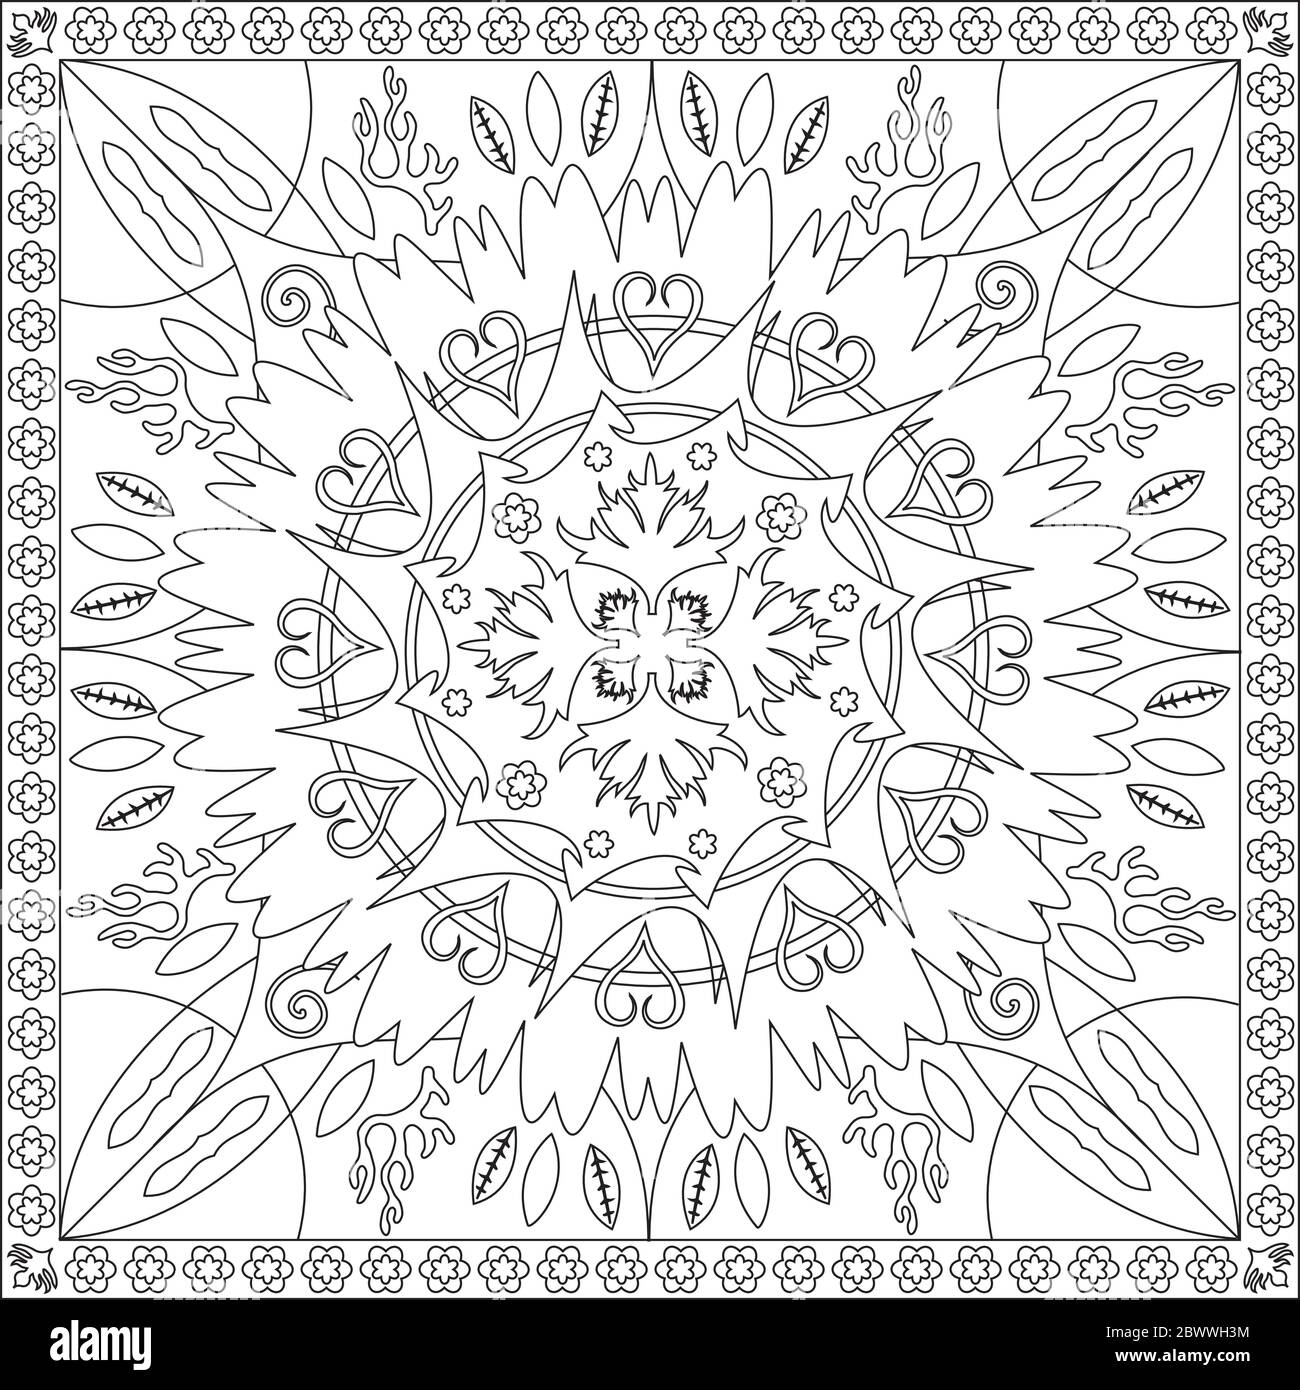 L'illustration de la page de coloriage en format carré - Mandala Fleur feuillage Star Design - Respirez profondément et détendez-vous et détendez-vous - Noir et Blanc Illustration de Vecteur